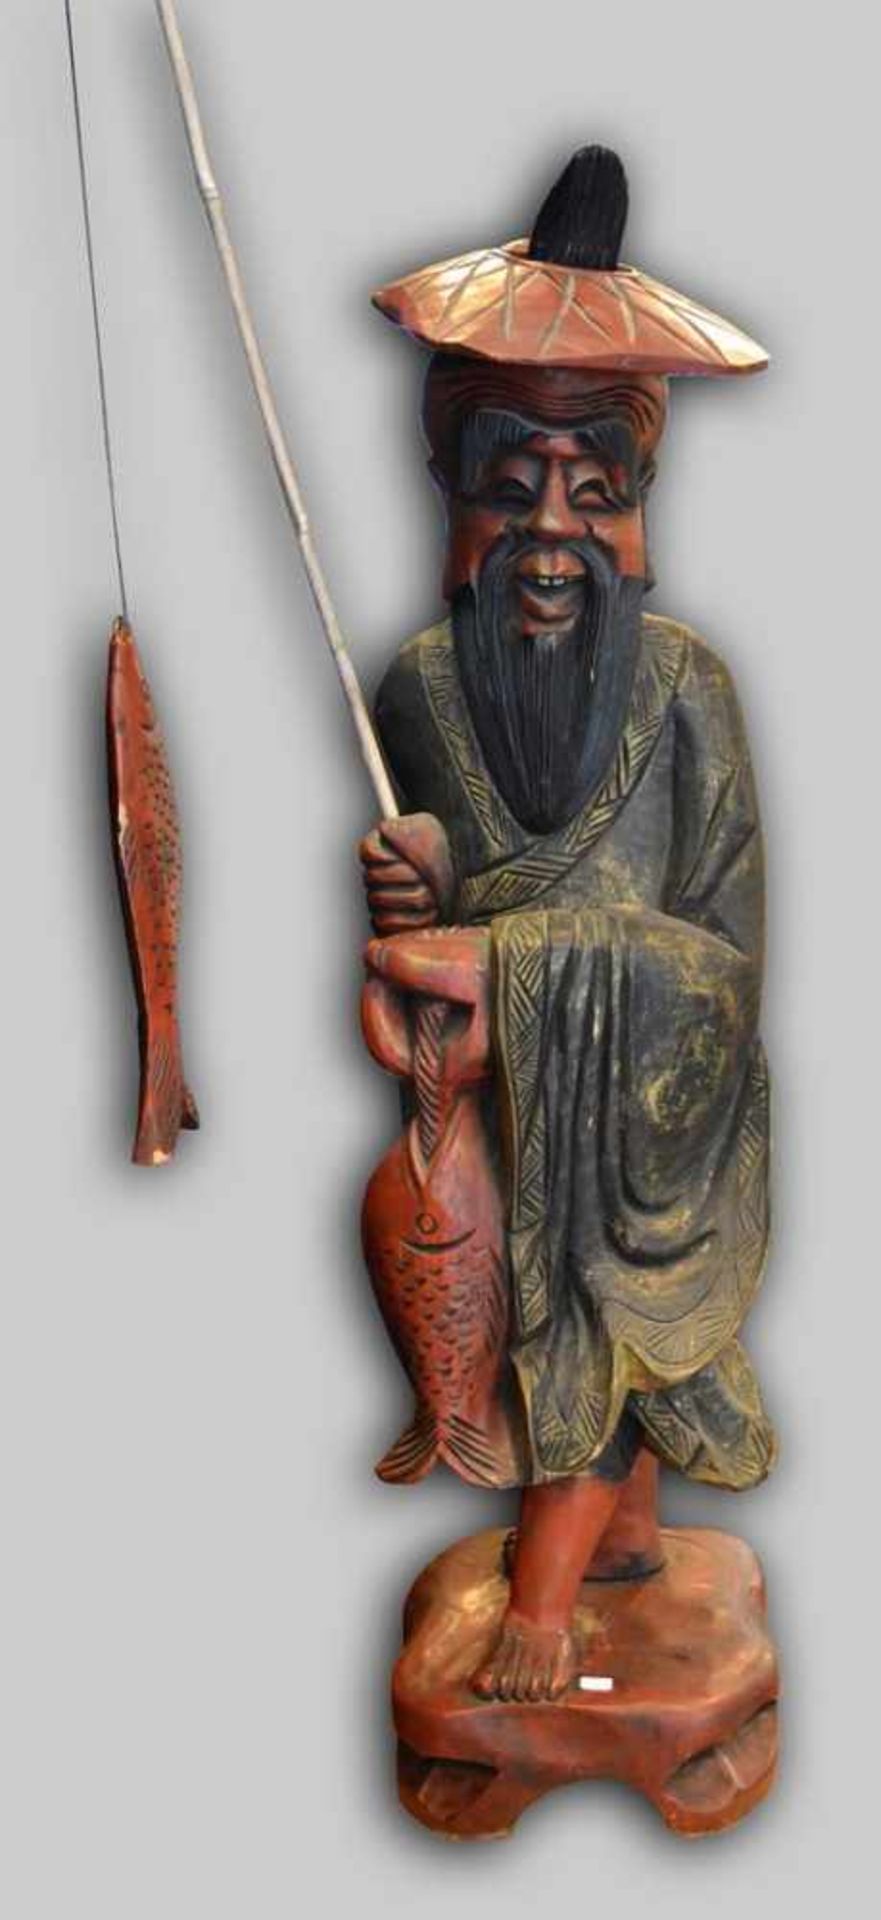 Asiatischer Angler Hartholz, geschnitzt, auf Sockel stehend, bunt bemalt, mit Angel und Fischen, H